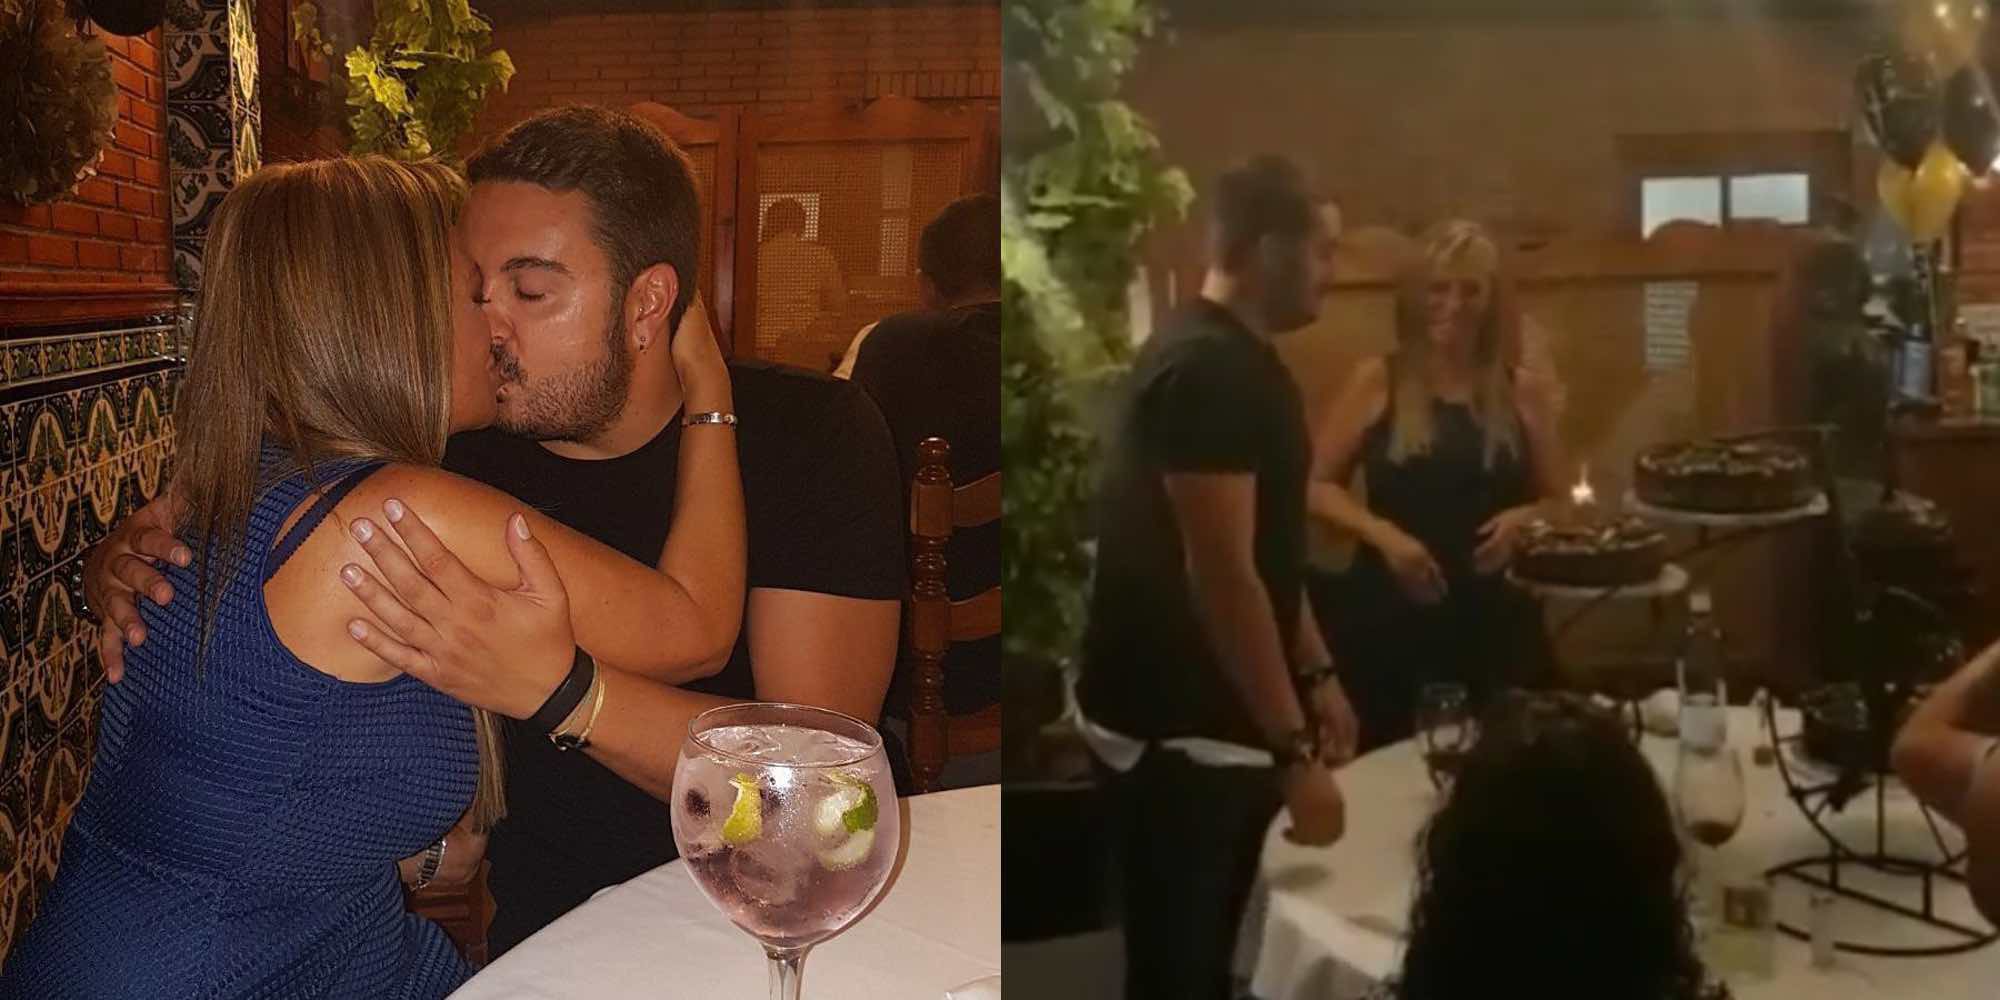 La fiesta sorpresa de Belén Esteban a su novio Miguel por su 30 cumpleaños